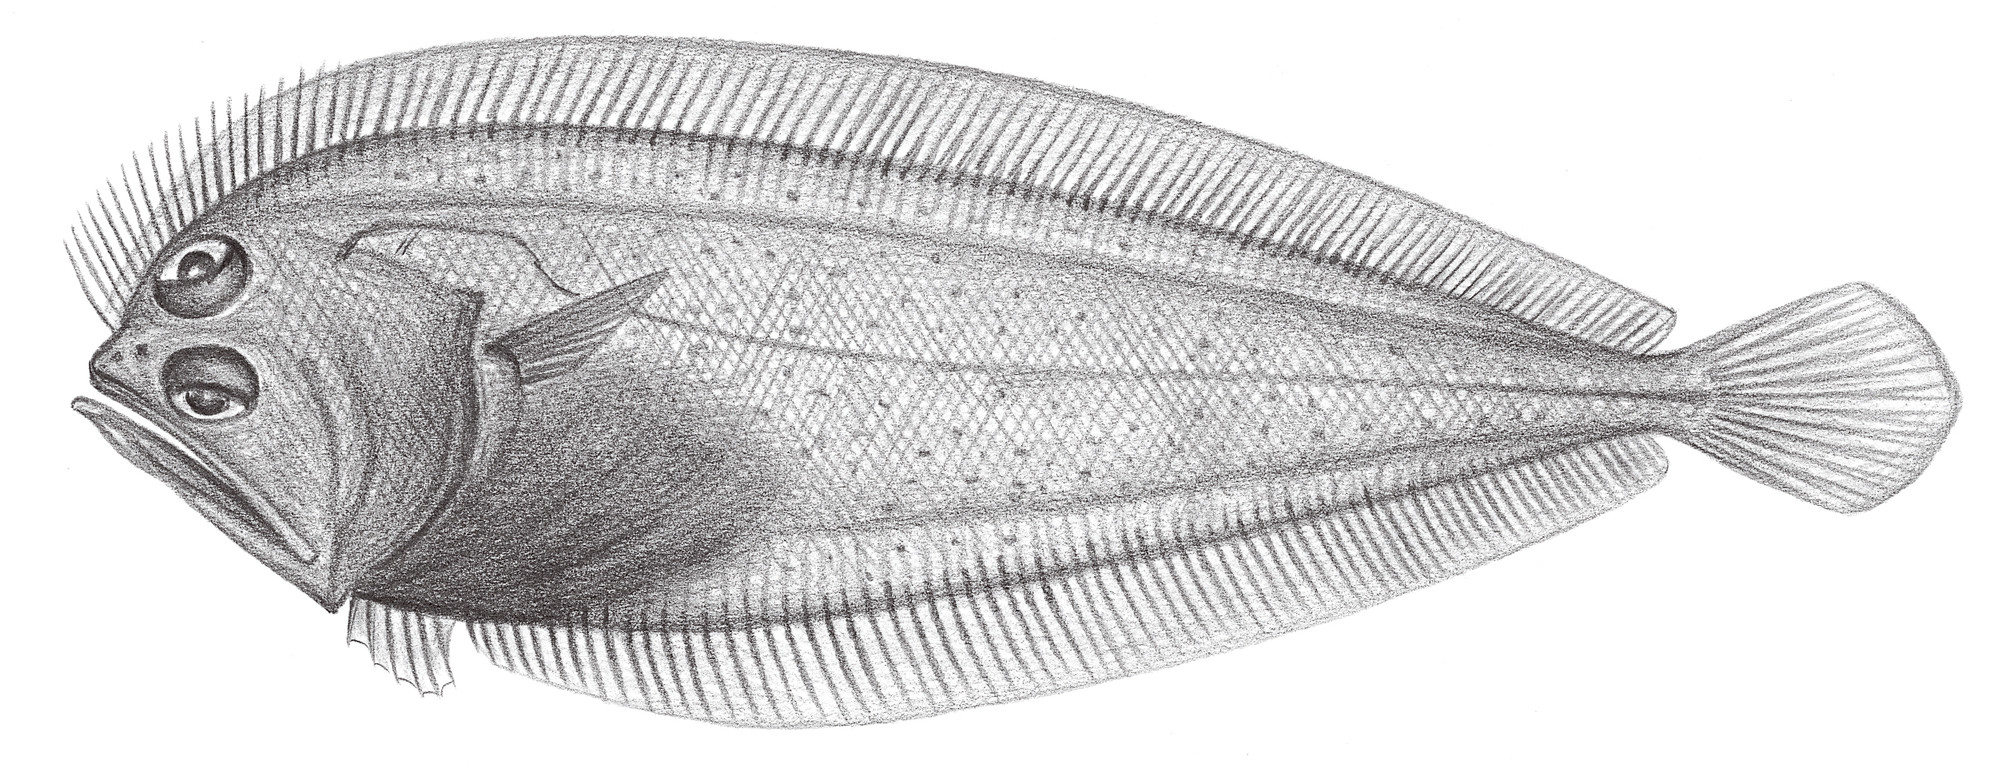 2408.	黑大口鮃（鰜鰈） Chascanopsetta lugubris lugubris Alcock, 1894